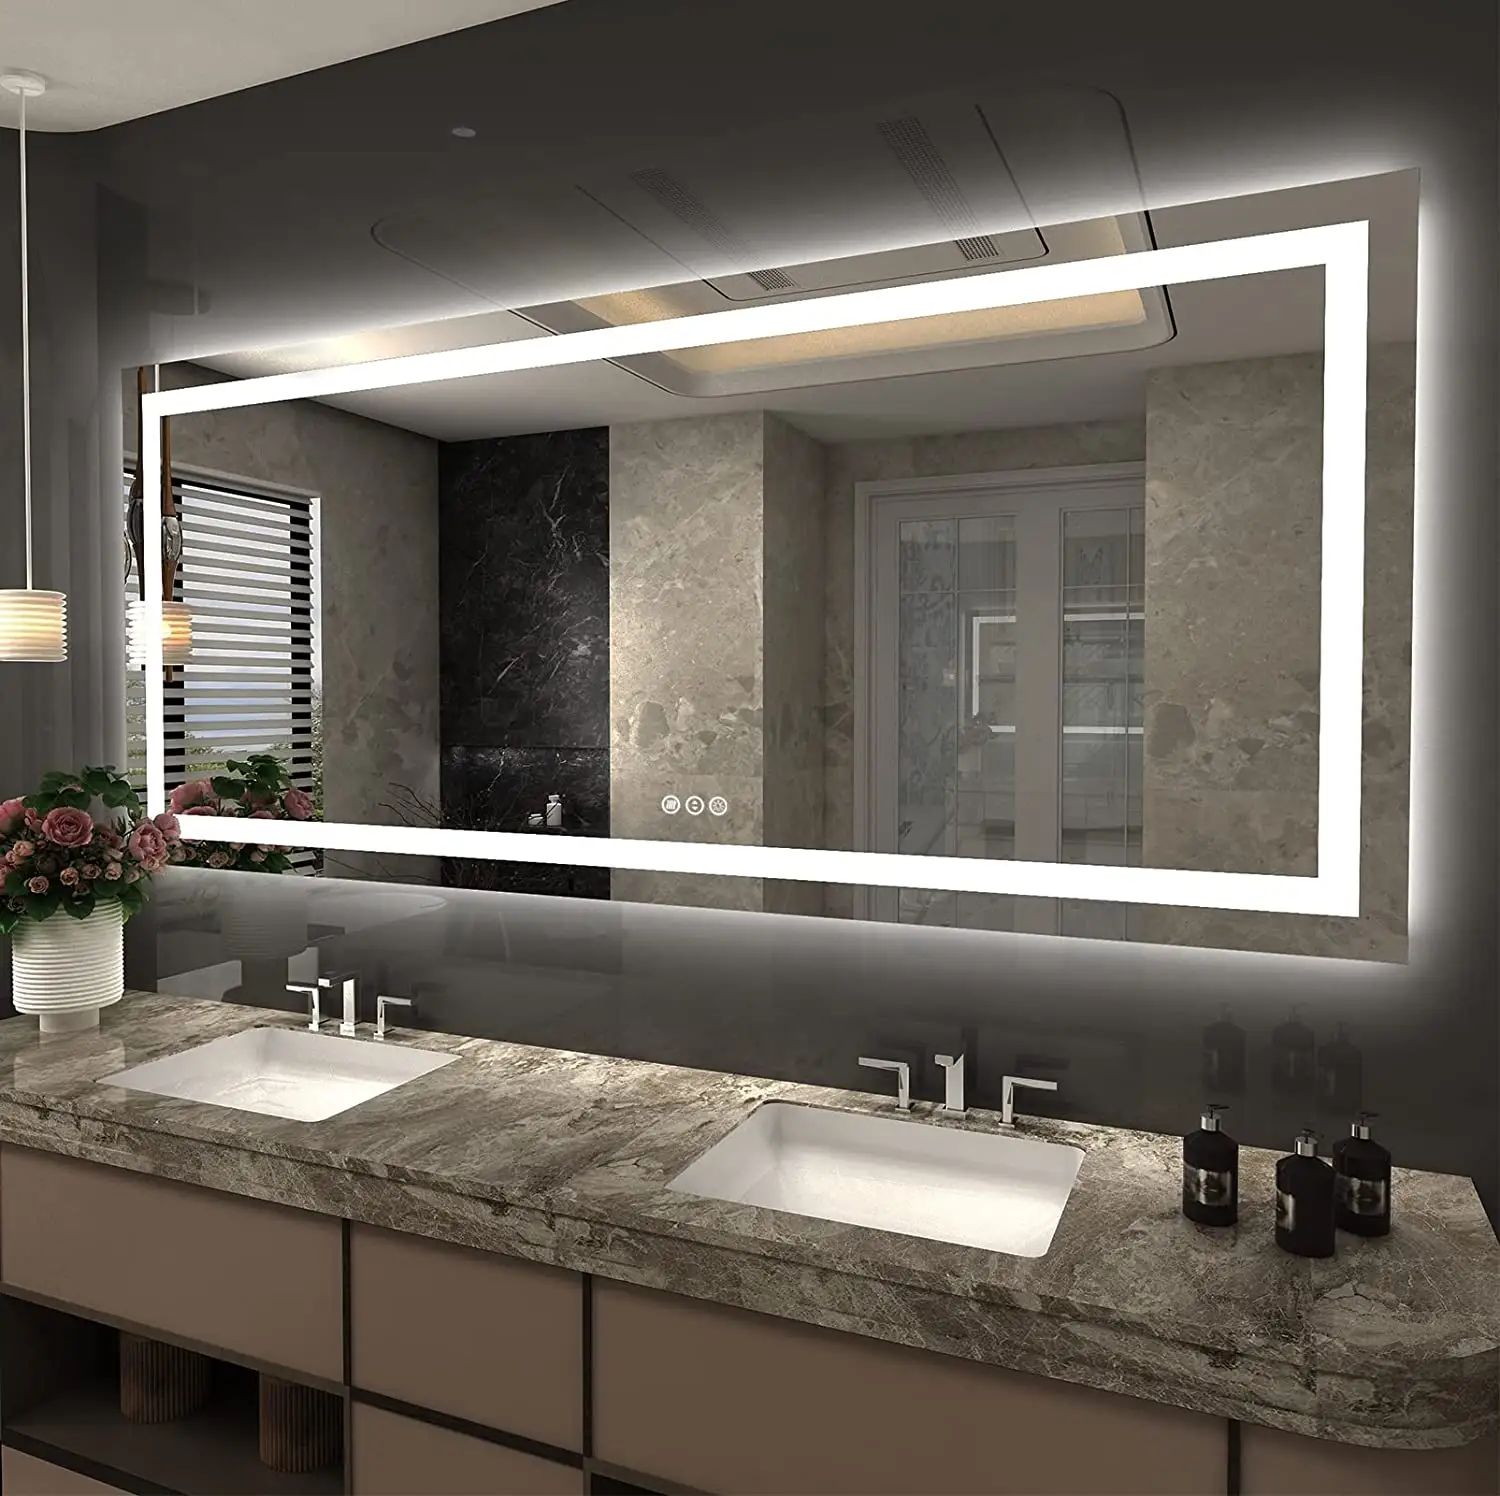 공장 공급 LED 조명 초대형 화장대 메이크업 거울 Led 디 밍이 가능한 Defogging 거울 Led 욕실 거울